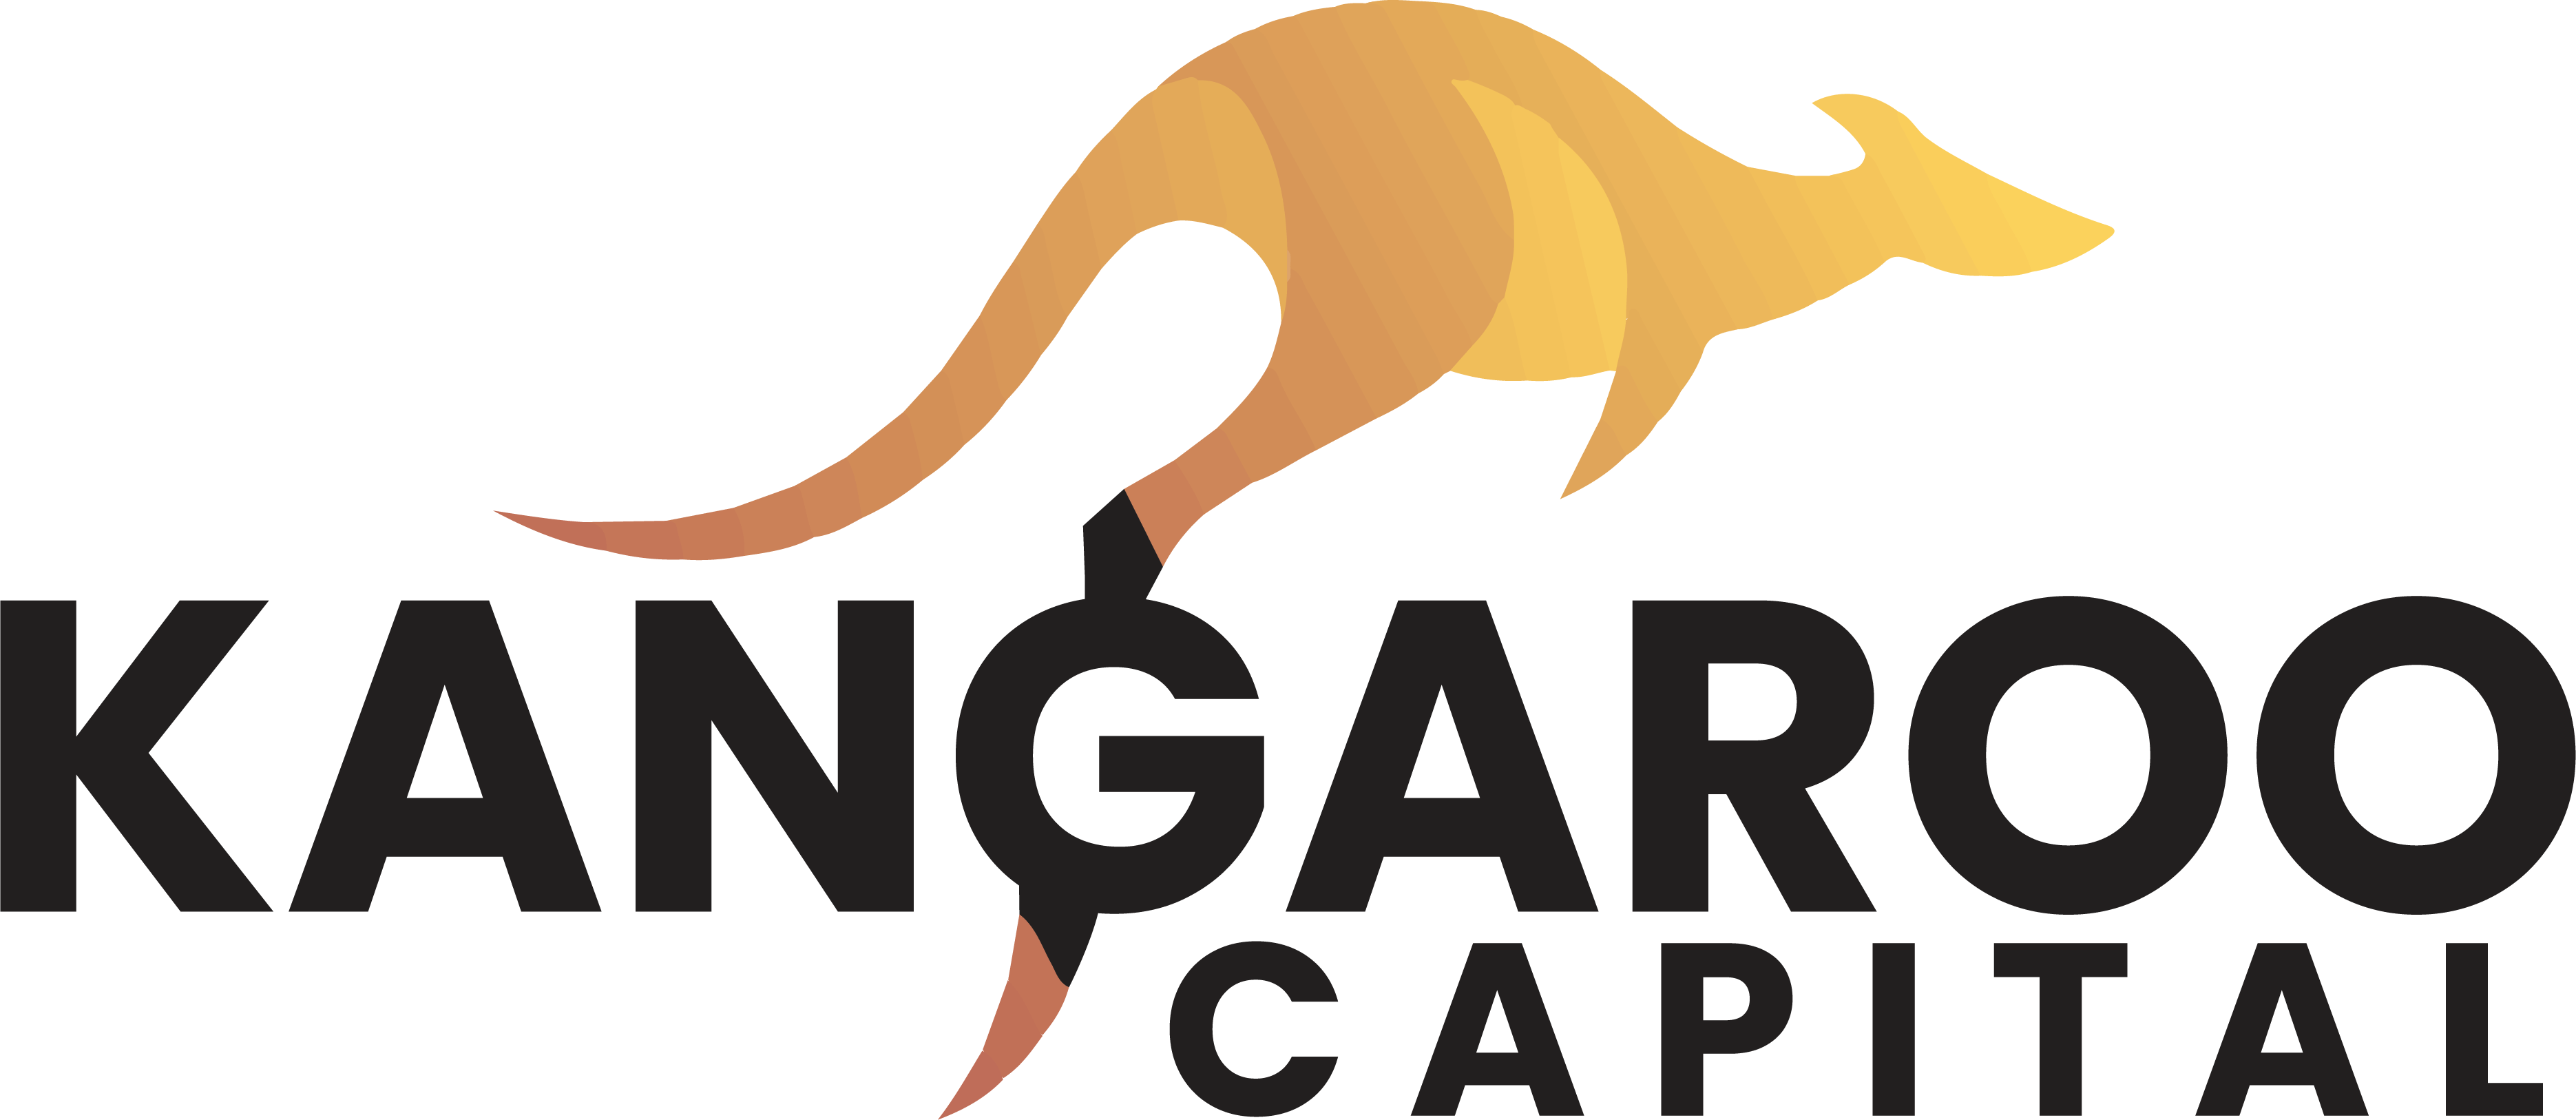 kangaroo capital